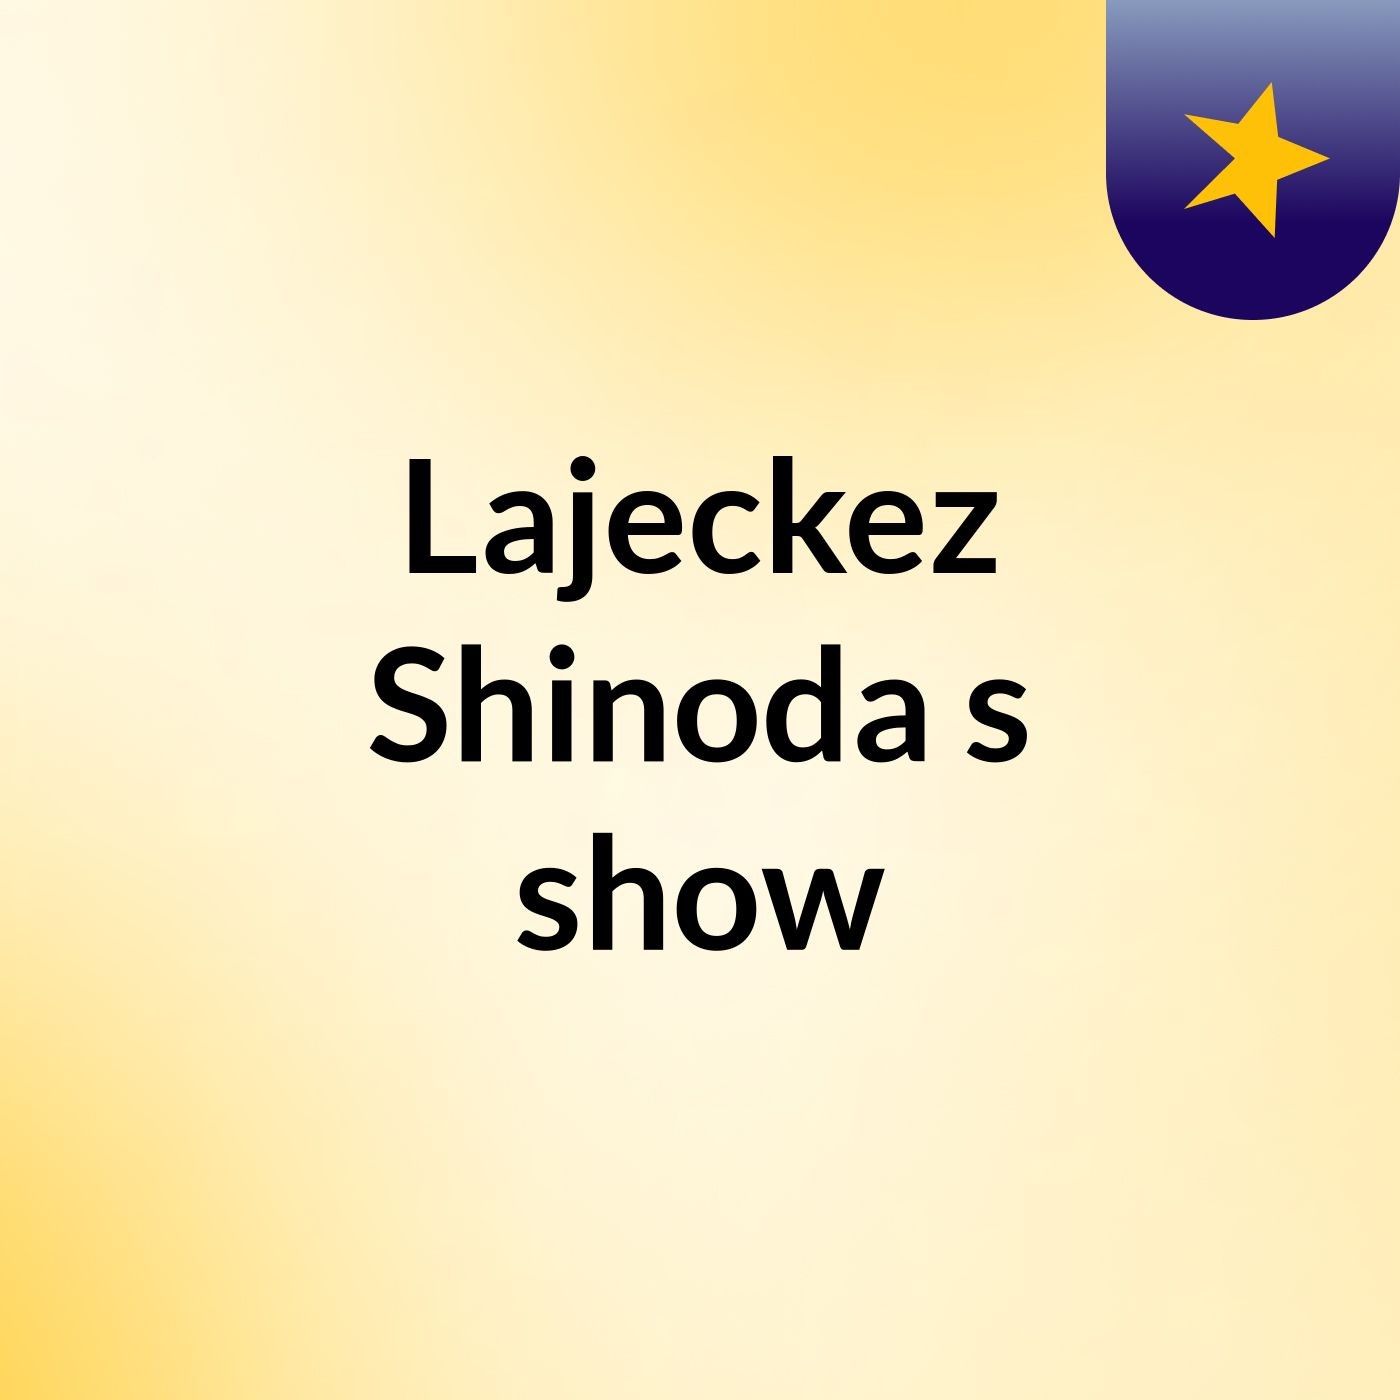 Episode 1 - Lajeckez Shinoda's show